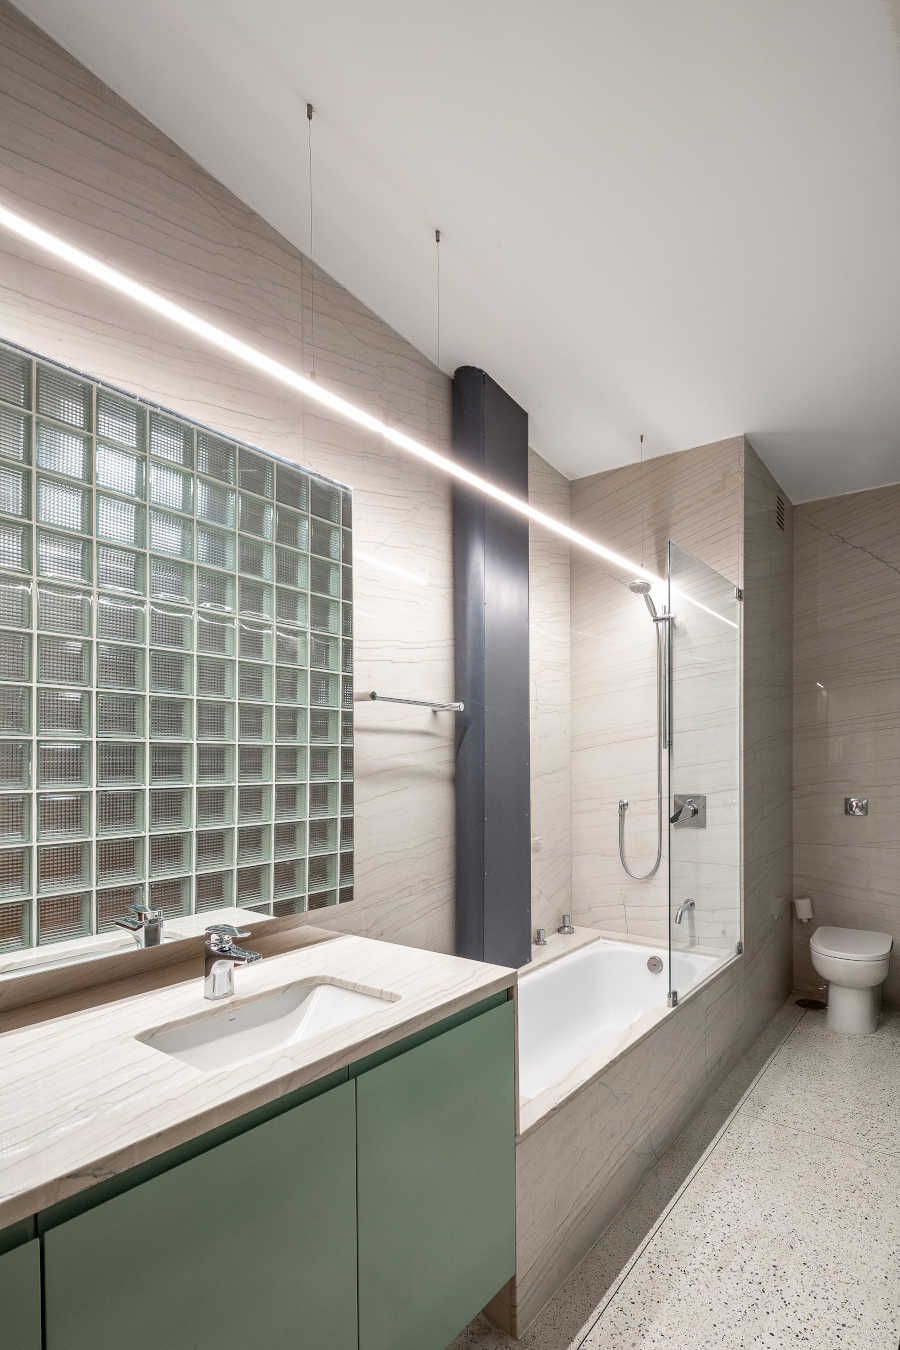 Banheiro com cores claras e blocos de vidro